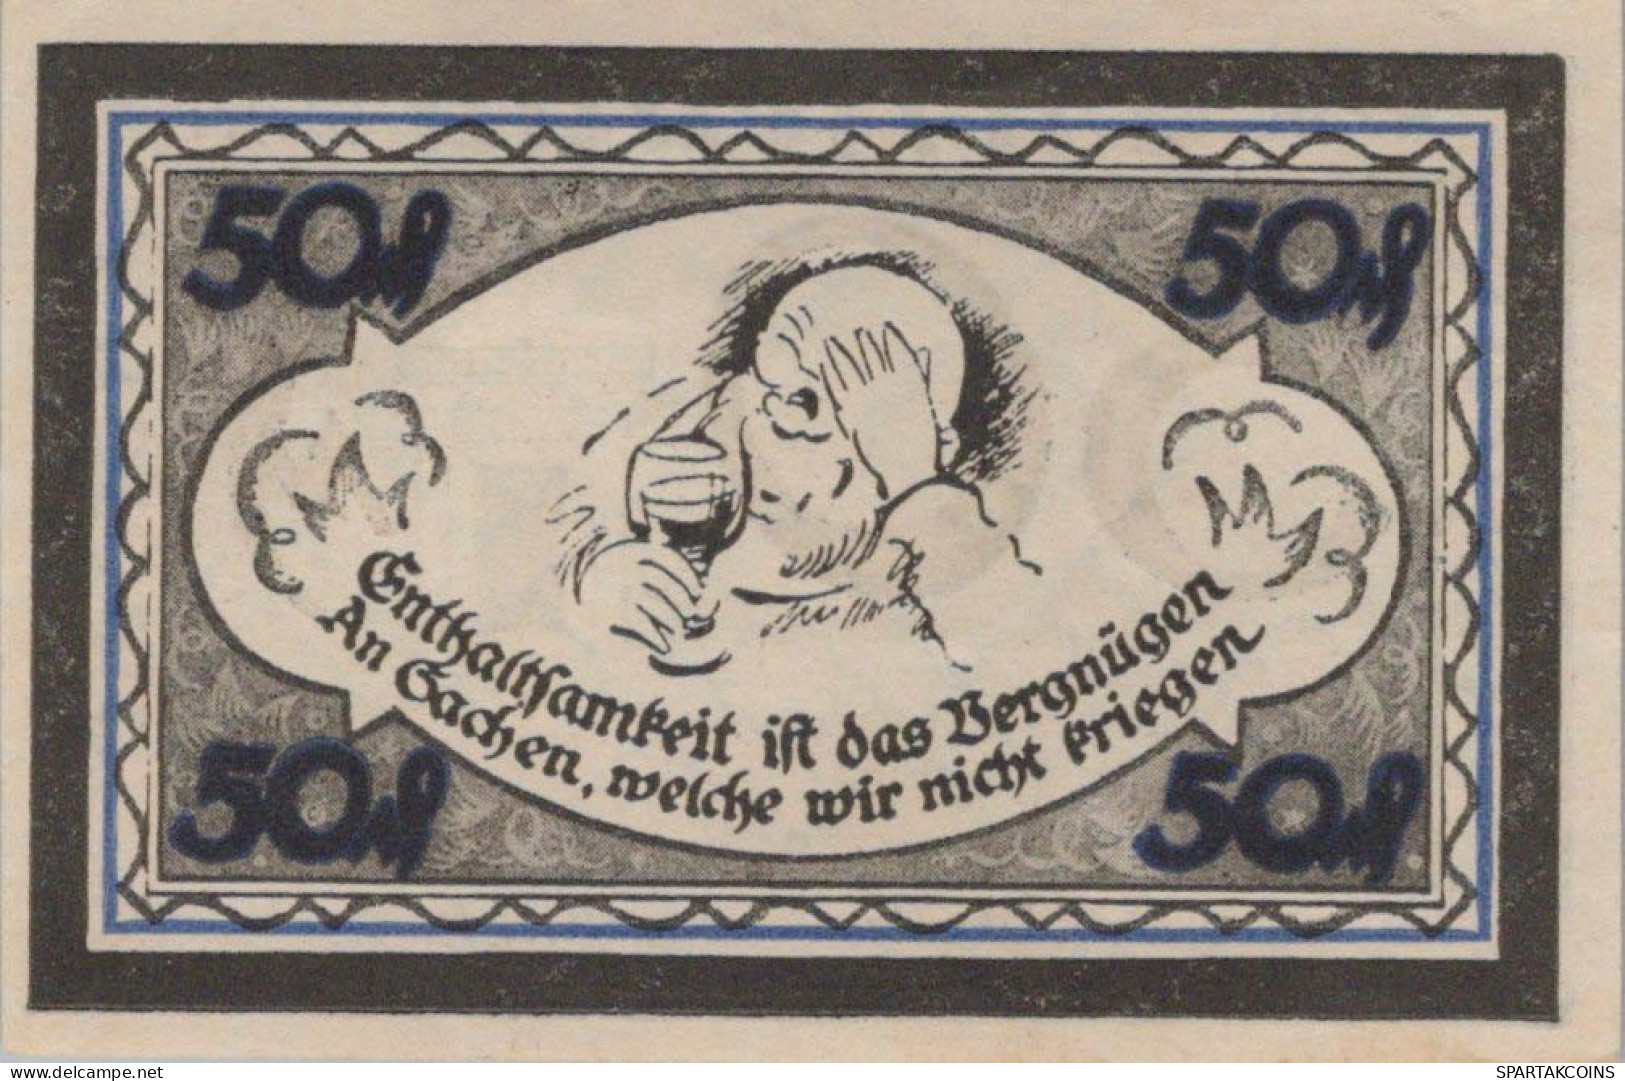 50 PFENNIG 1921 Stadt STOLZENAU Hanover DEUTSCHLAND Notgeld Banknote #PG235 - [11] Emissions Locales